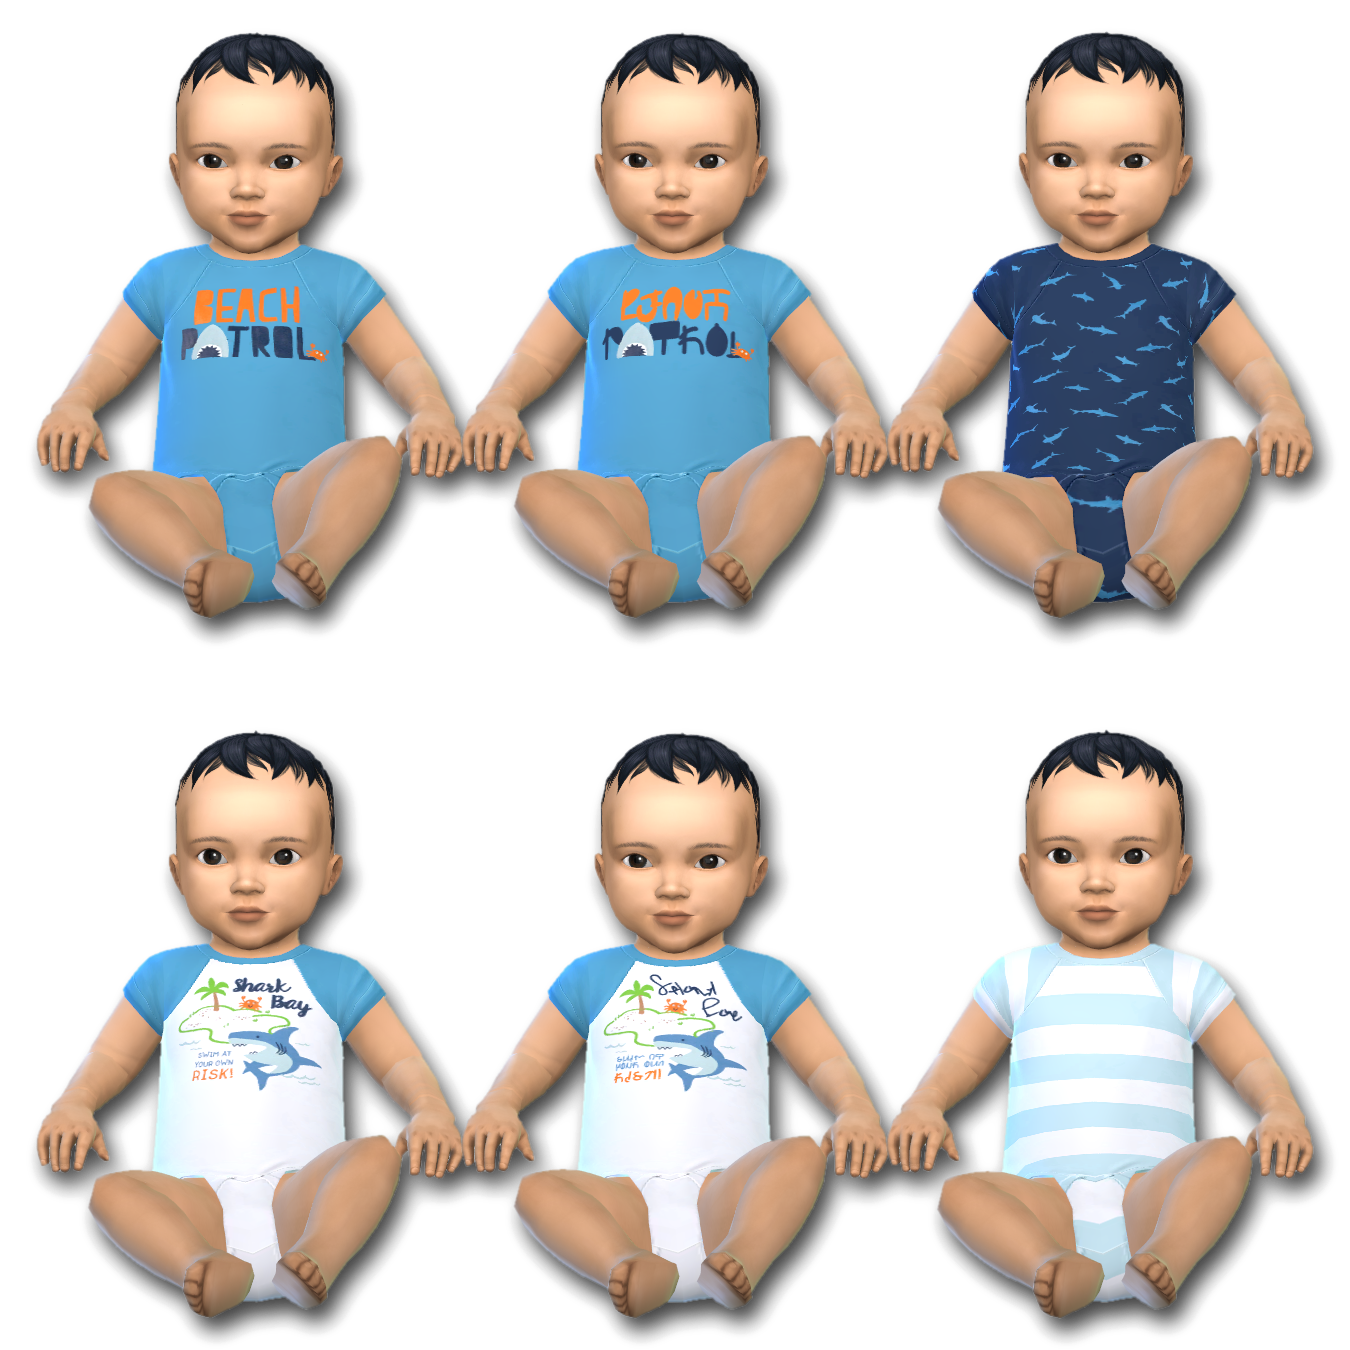 Infant Shark Bay Onesie - The Sims 4 Create a Sim - CurseForge